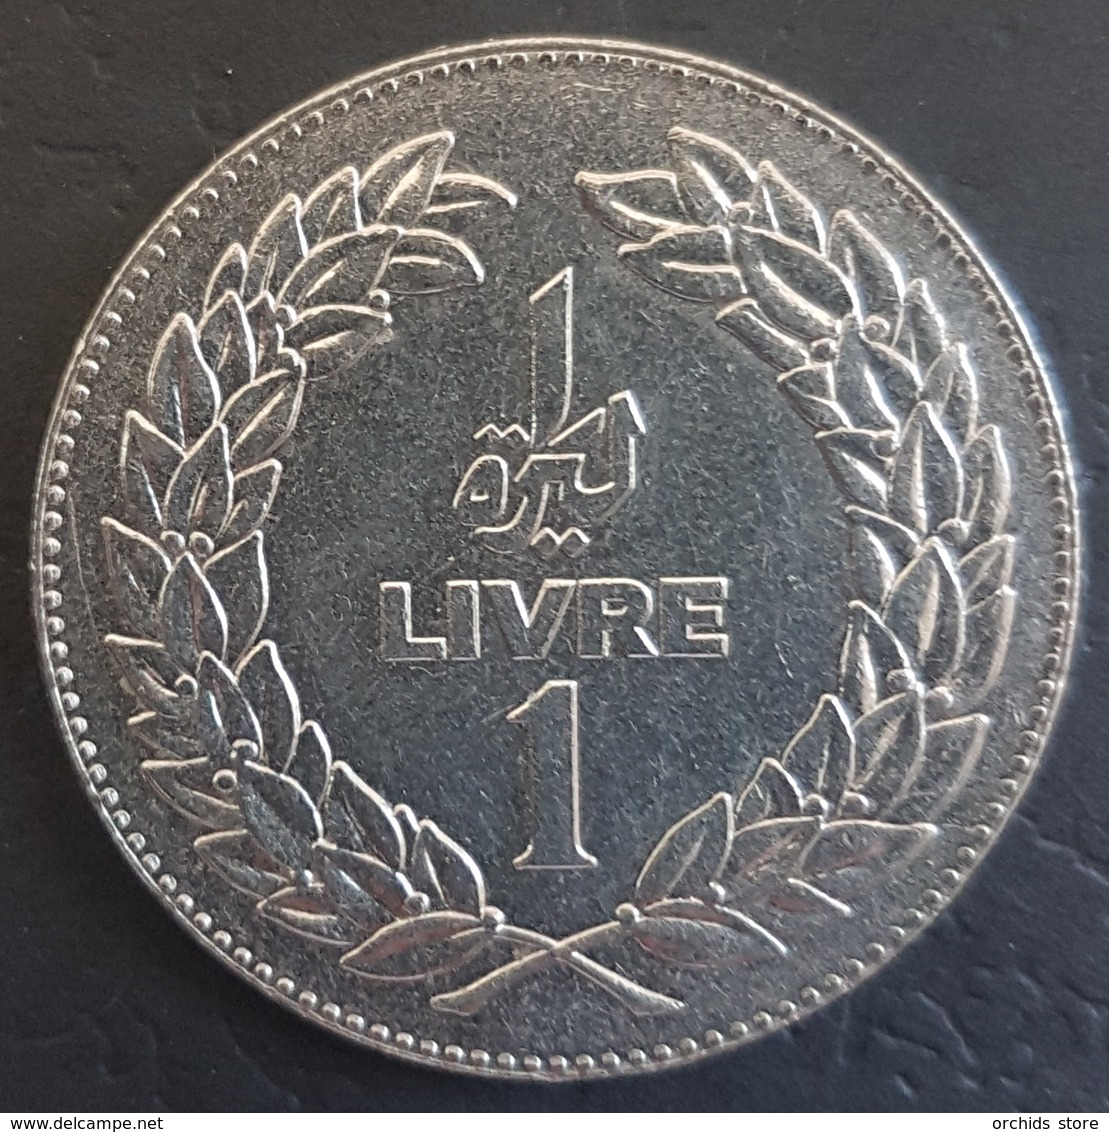 HX - Lebanon 1980 1 Livre Coin - Lebanon